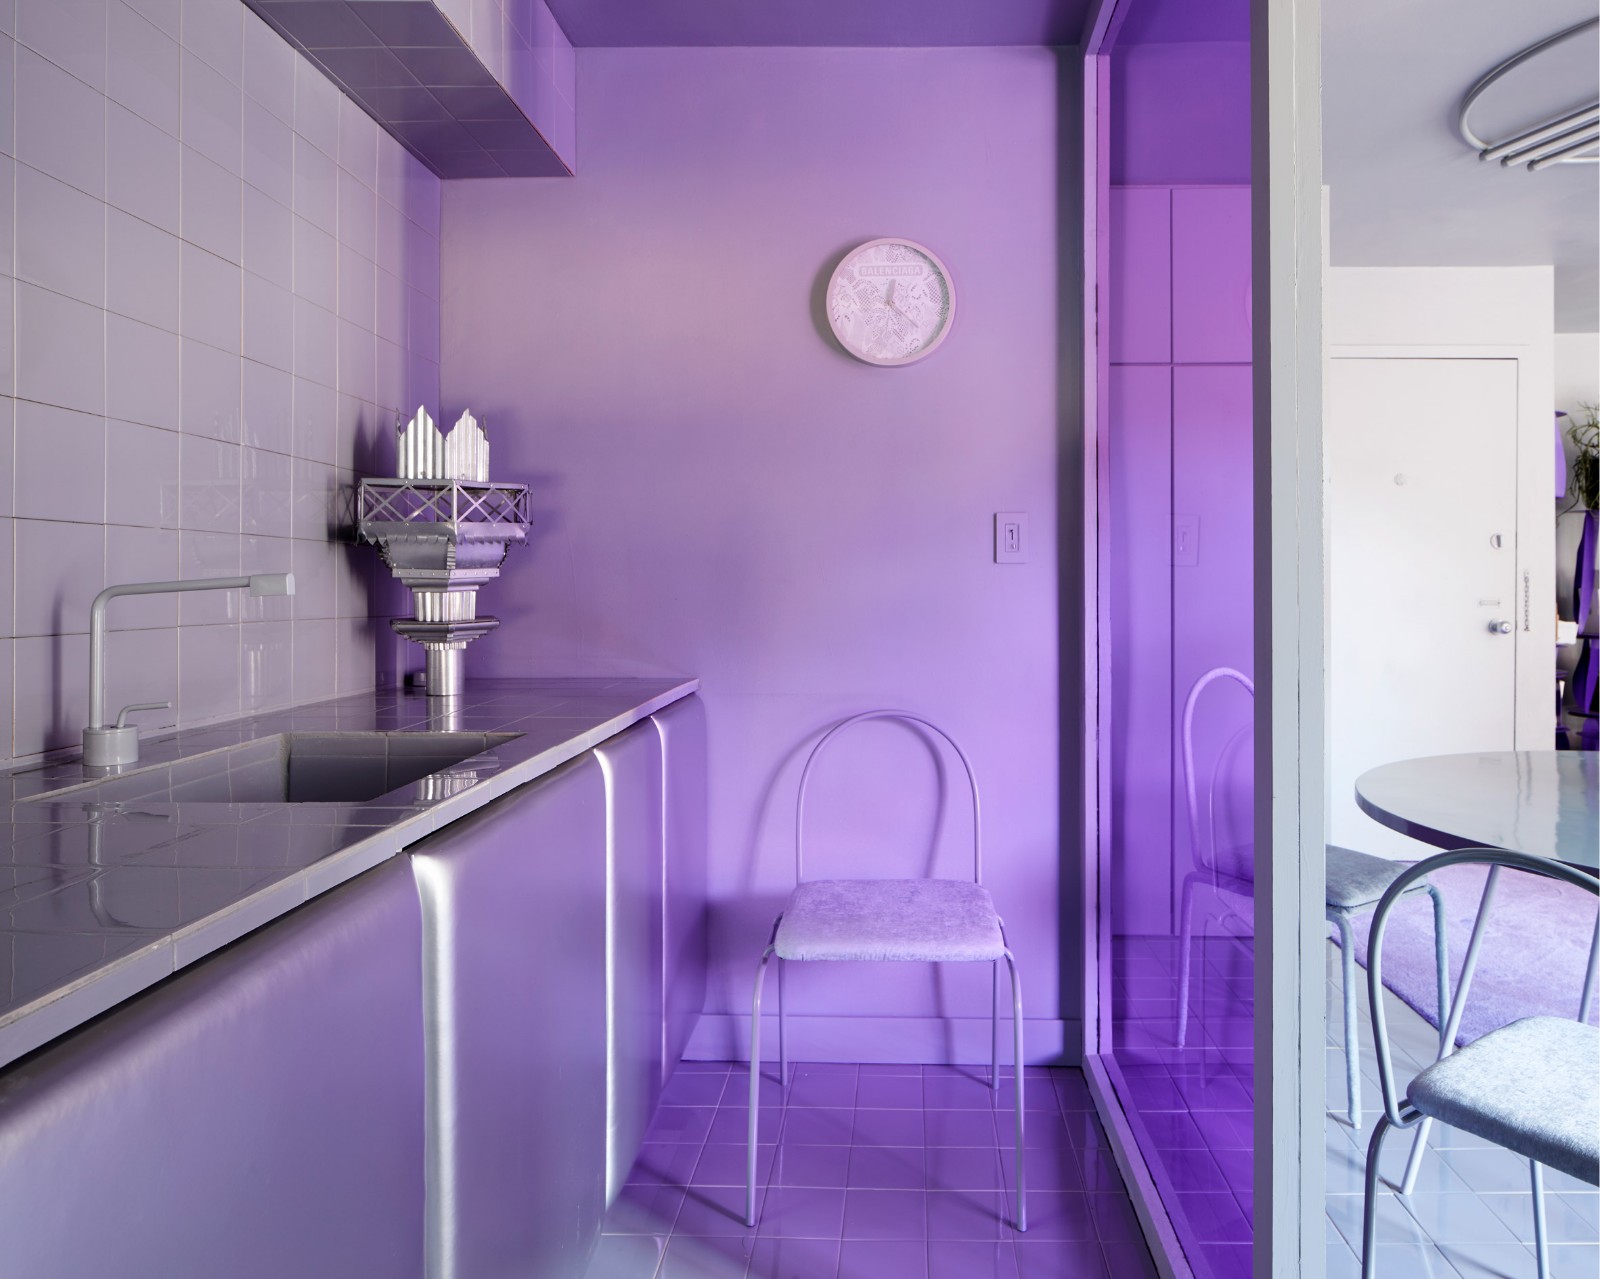 设计师自宅翻新设计——紫罗兰色的精致简约 | Crosby Studios-建E网设计案例